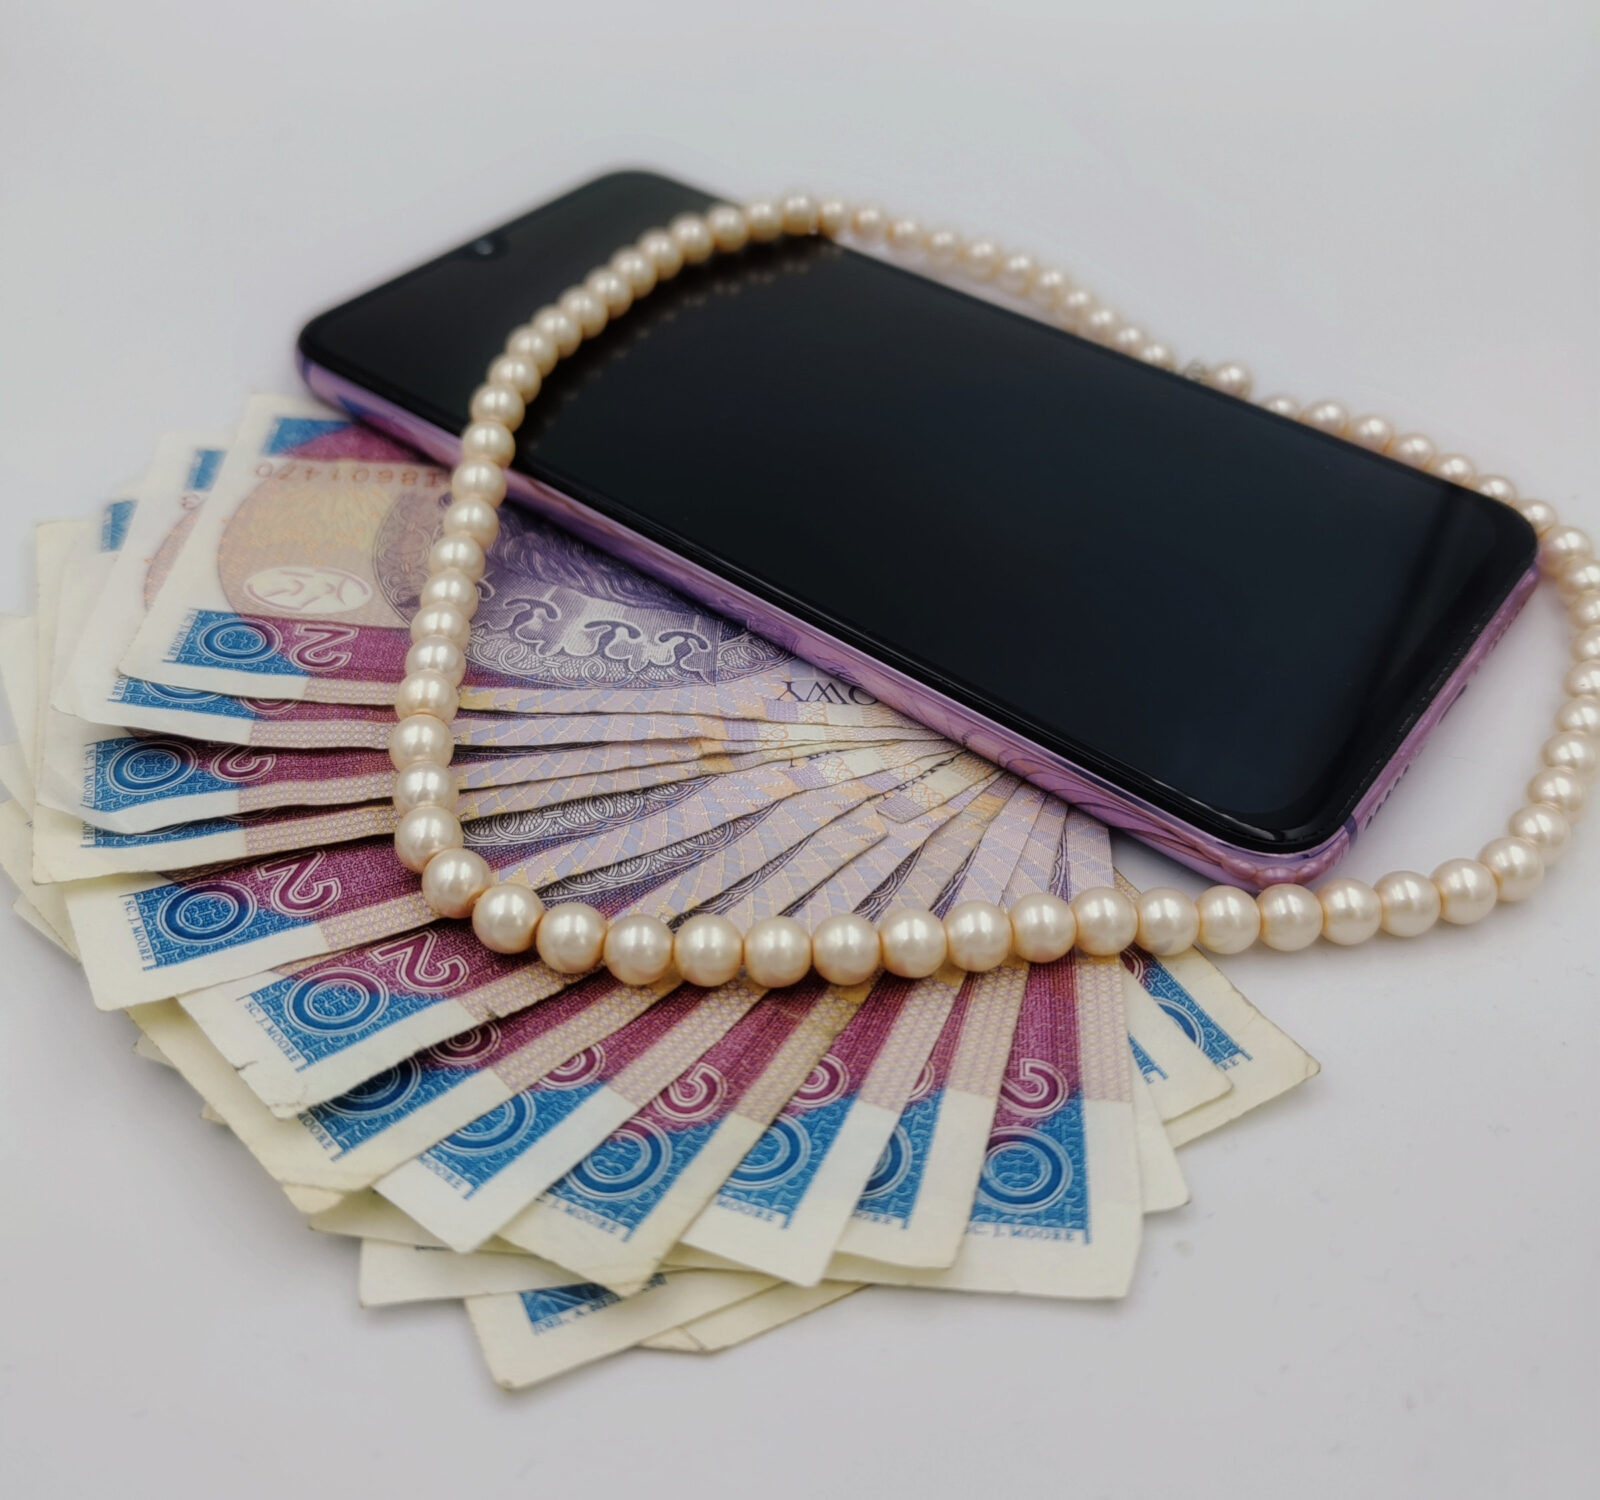 zdjęcie ilustracyjne, na którym widać banknoty o wartości 20 zł, korale oraz smartfon w fioletowej obudowie. Autorem zdjęcia jest Agnieszka Rodziewicz.